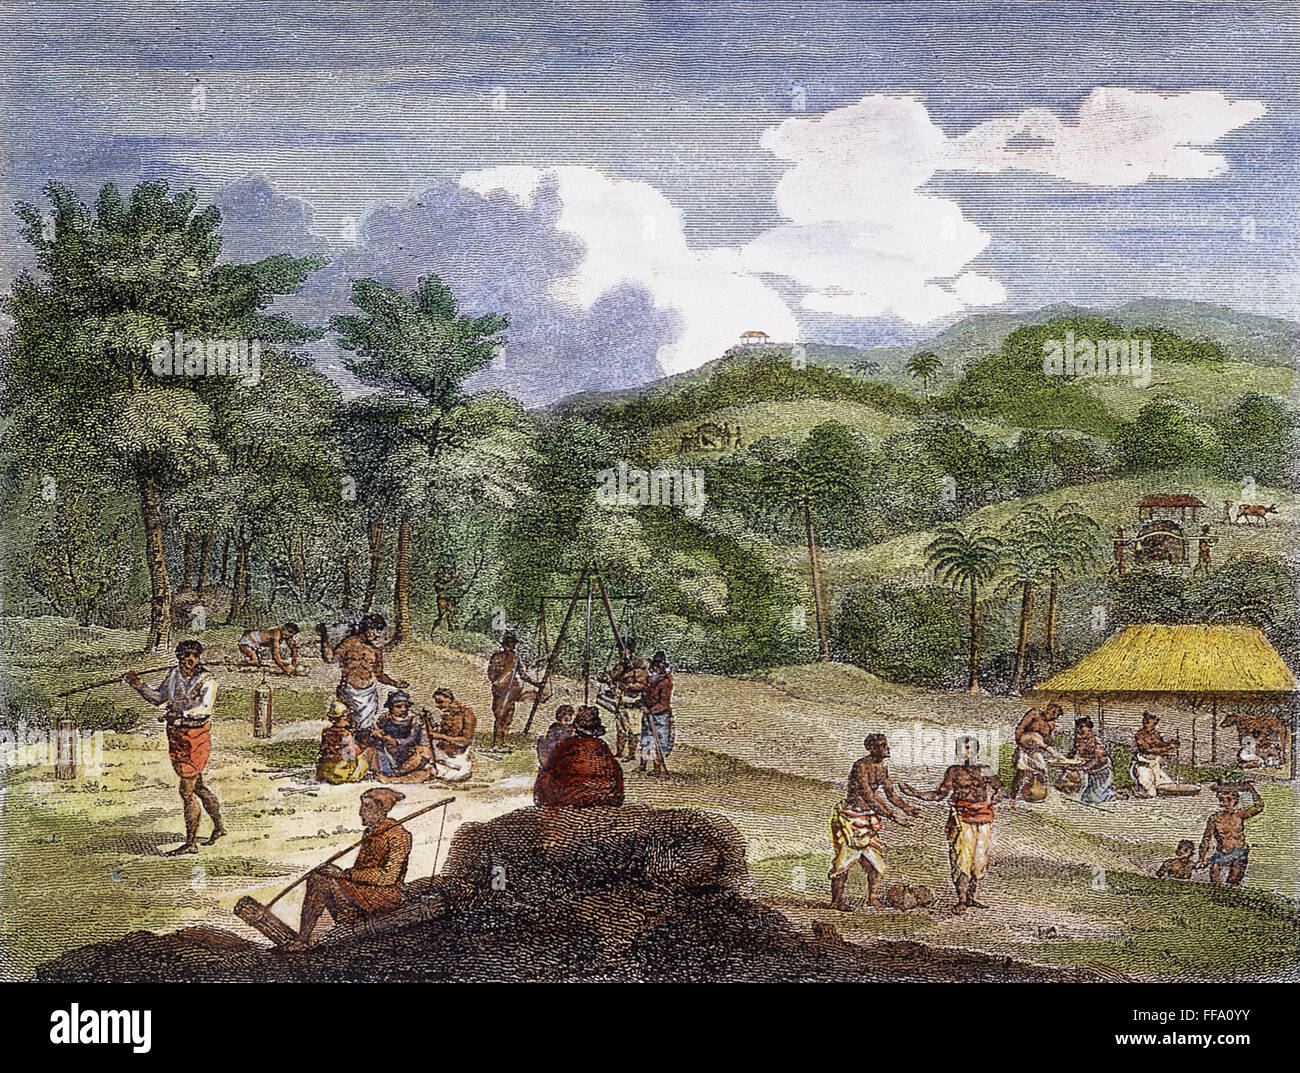 PLANTATION DE CANNELLE, 1804. /NA cannelle plantation près de Colombo, Ceylan (aujourd'hui Sri Lanka). Gravure sur cuivre, anglais, 1804. Banque D'Images